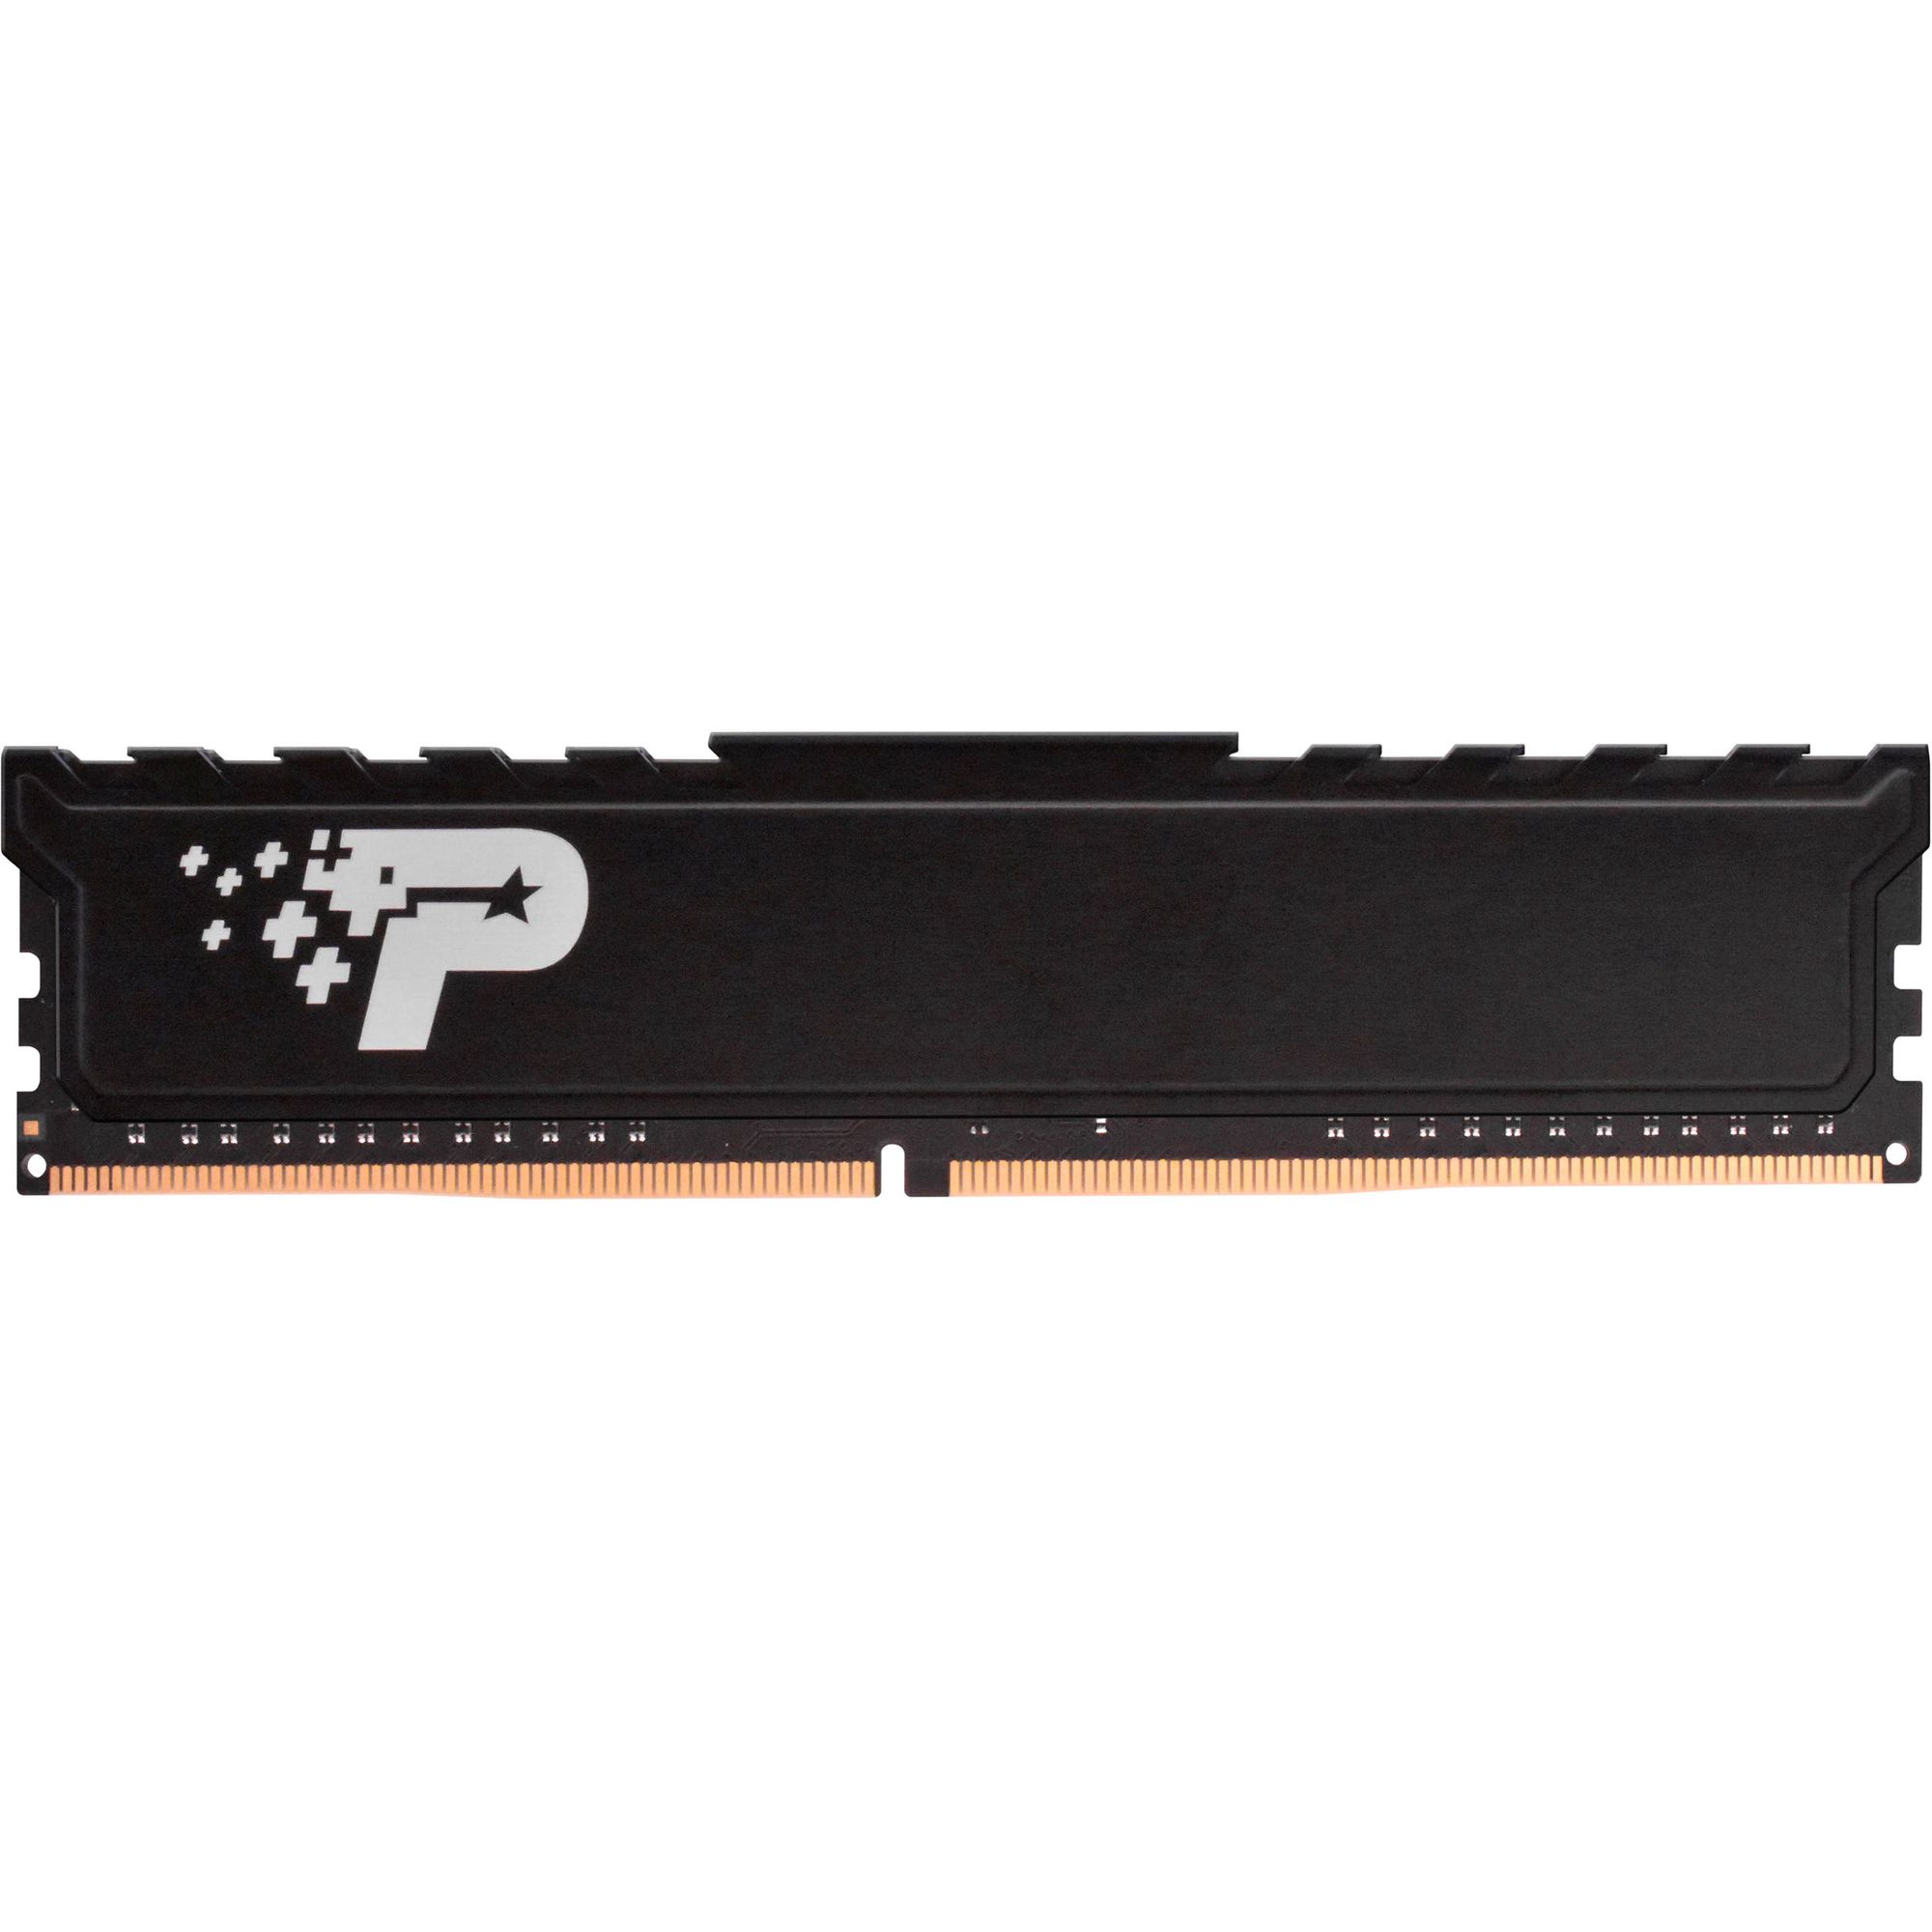 Память оперативная DDR4 Patriot Memory SL Premium 16Gb 2666MHz (PSP416G26662H1) память оперативная ddr4 patriot memory signature 16gb 2666mhz psp416g266681h1